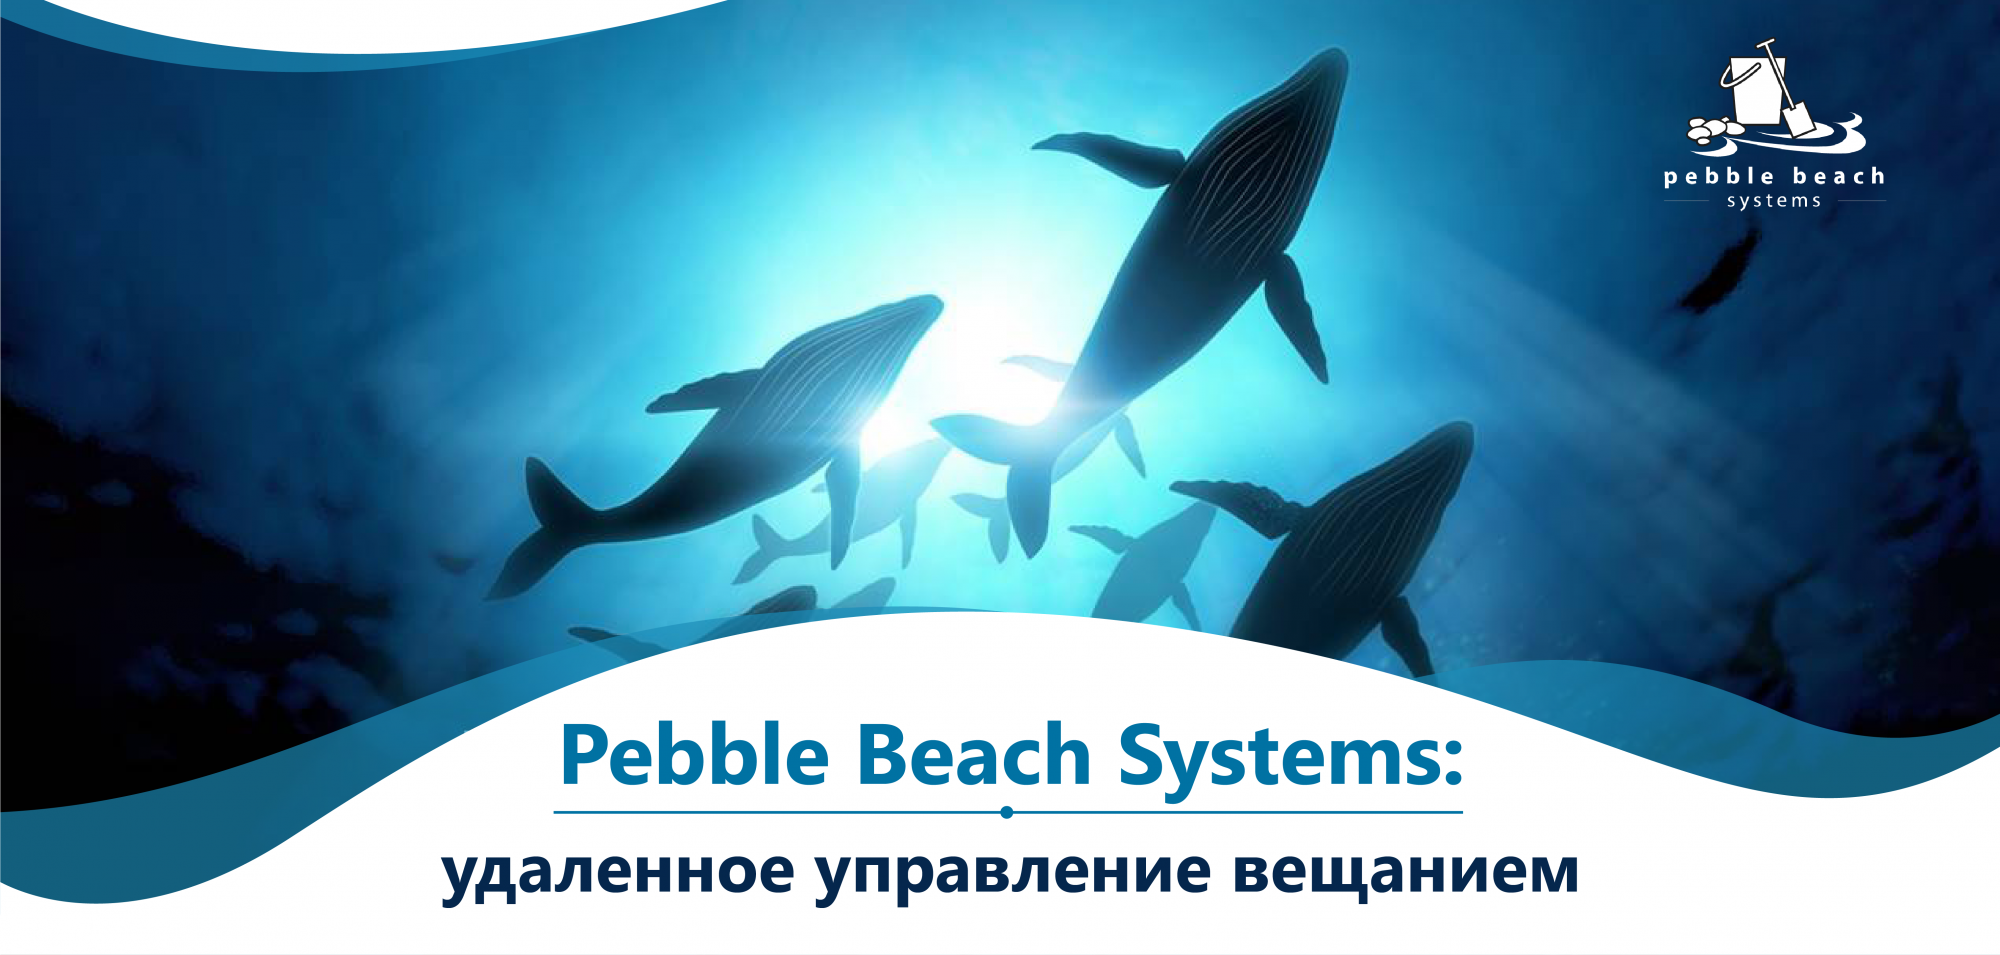 Pebble Beach Systems - удаленное управление вещанием